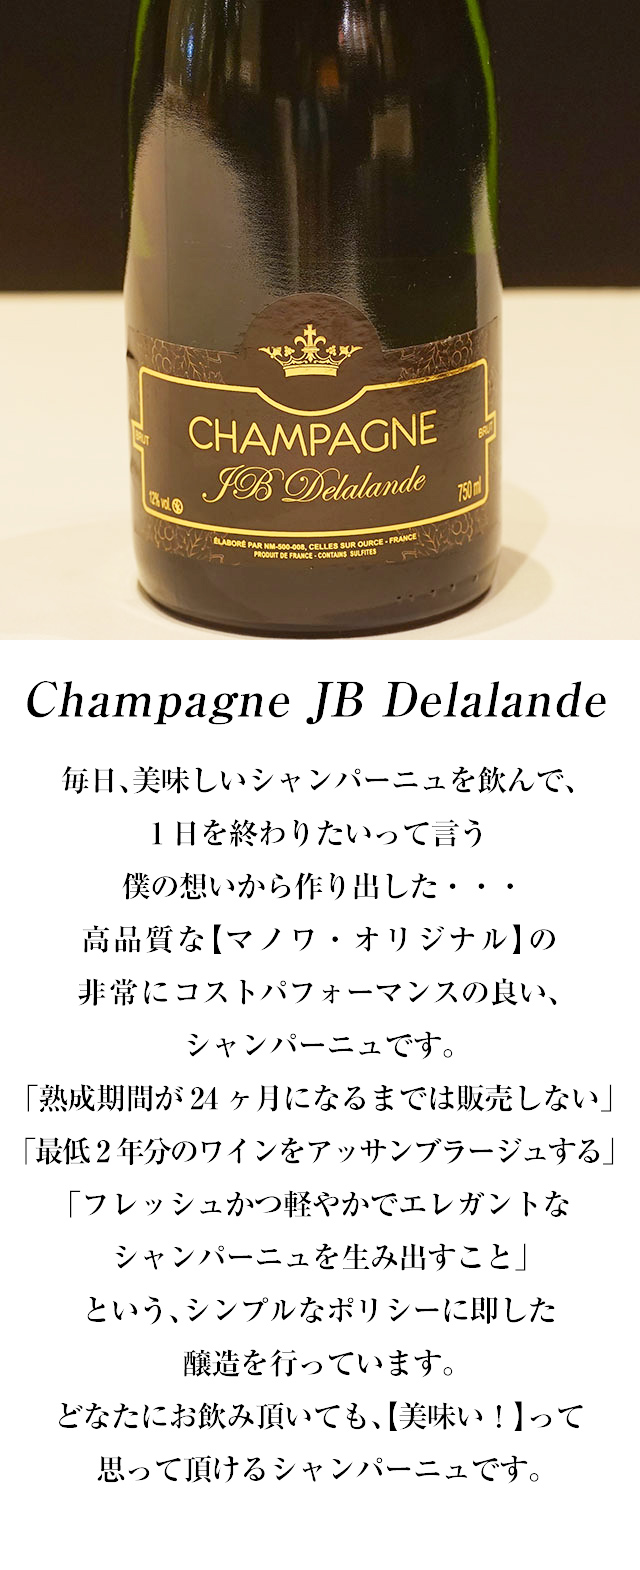 Champagne JB Delalande 毎日、美味しいシャンパーニュを飲んで、1日を終わりたいって言う僕の想いから作り出した・・・高品質な【マノワ・オリジナル】の非常にコストパフォーマンスの良い、シャンパーニュです。「熟成期間が24ヶ月になるまでは販売しない」「最低2年分のワインをアッサンブラージュする」「フレッシュかつ軽やかでエレガントなシャンパーニュを生み出すこと」という、シンプルなポリシーに即した醸造を行っています。どなたにお飲み頂いても、【美味い！】って思って頂けるシャンパーニュです。